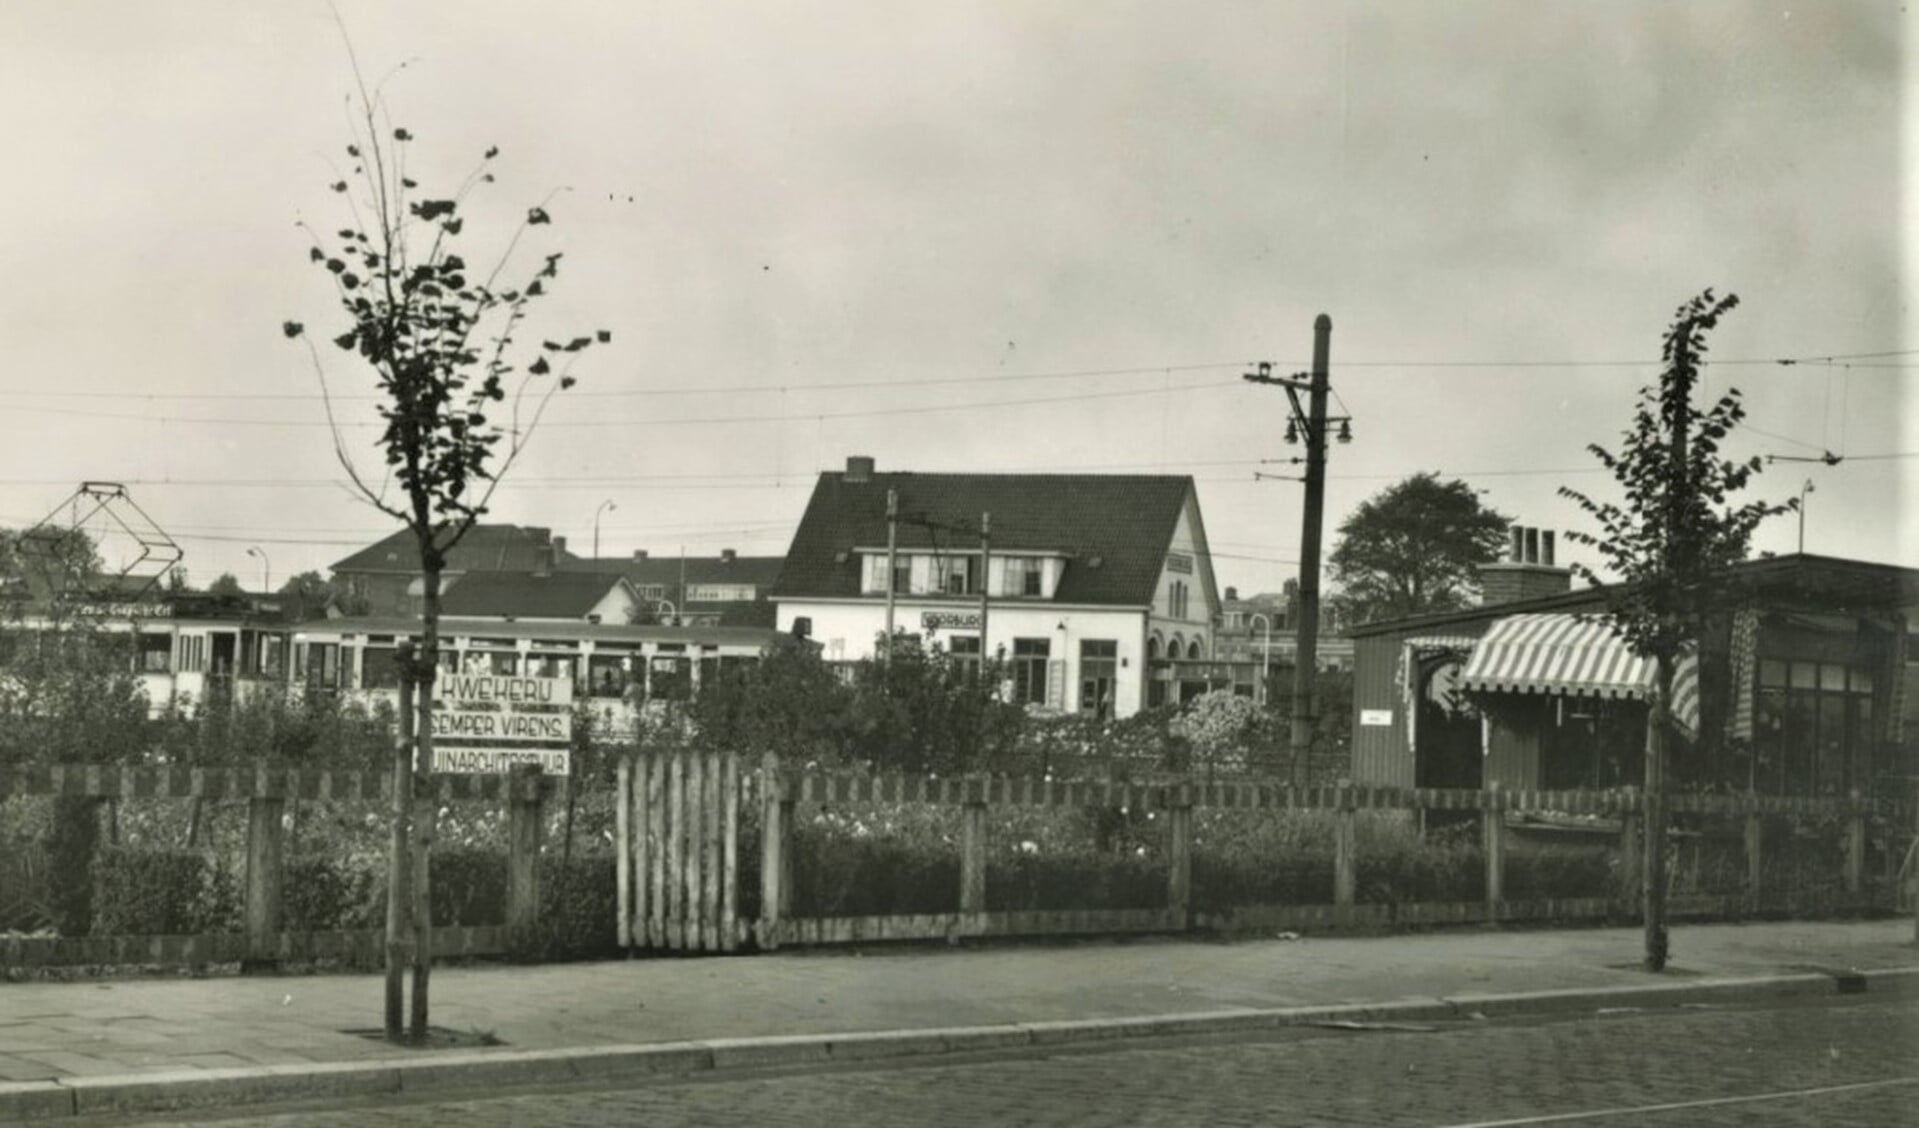  Voorburgs station aan het Westeinde met eindpunt lijn 10, circa 1950 (archief F.v.d. Helm).